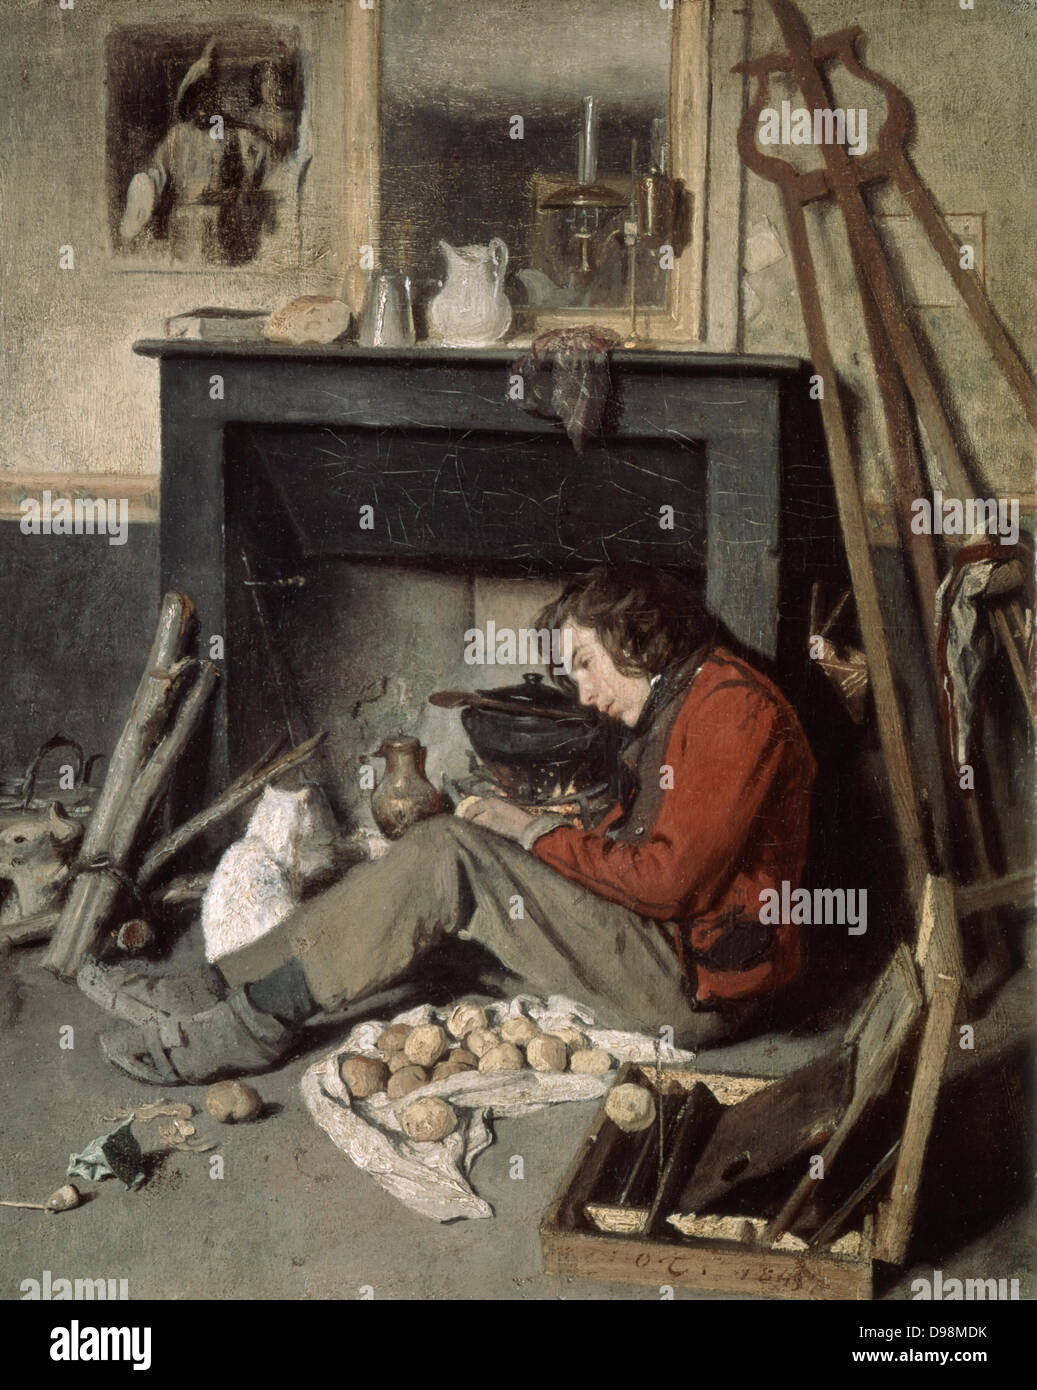 Der Artist Studio" 1845. Öl auf Leinwand. Octave Tassaert (1800-1874) Französische genre- und Porträtmaler. Künstler und seine weiße Katze vor dem Feuer auf der Sitzung ist ein Kochtopf. Argand Lampe am Kaminsims. Paint Box Aufsteller Stockfoto